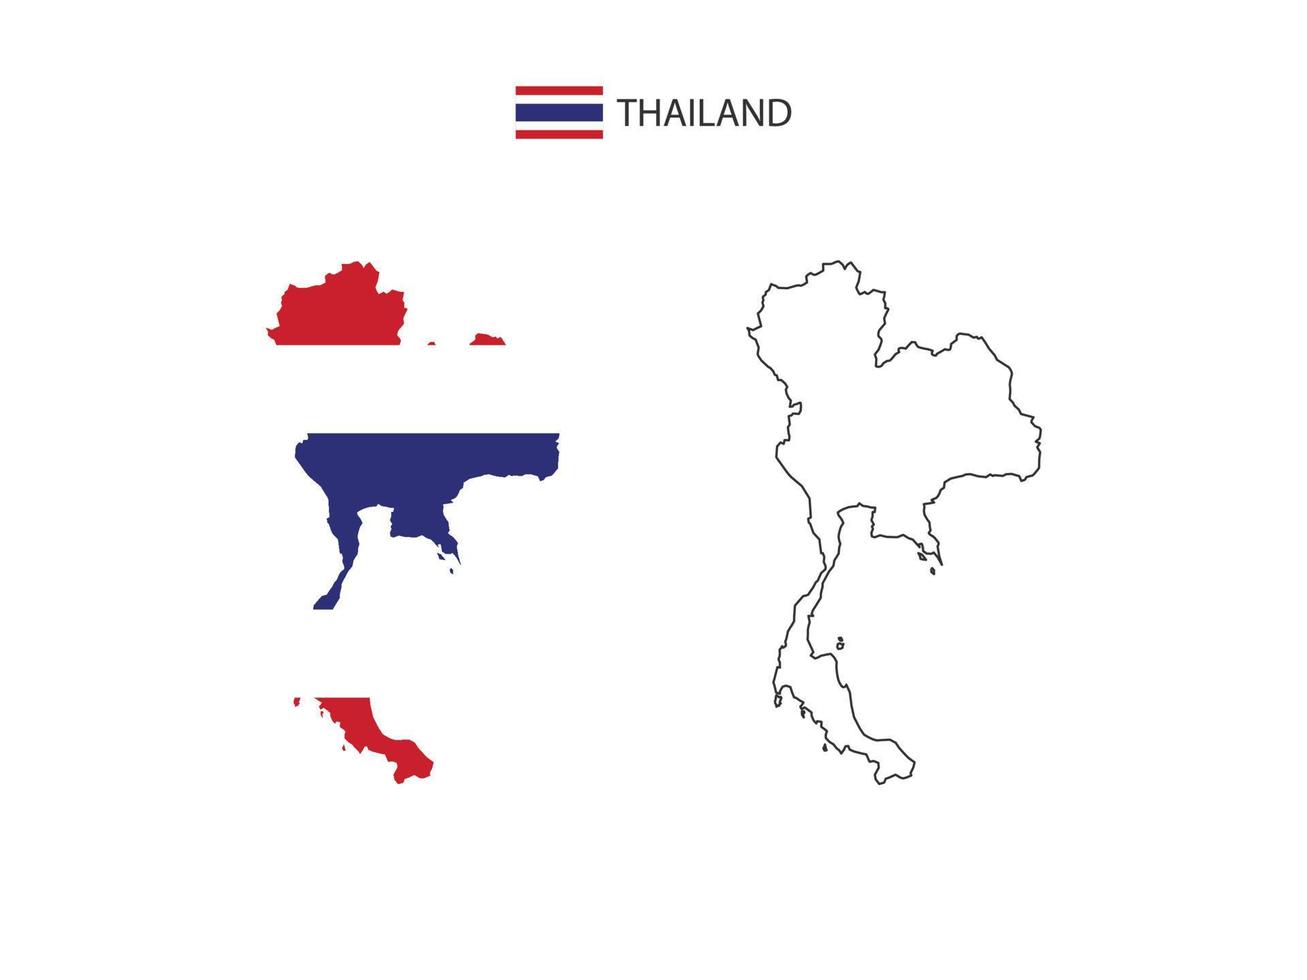 vetor da cidade do mapa da tailândia dividido pelo estilo de simplicidade do contorno. tem 2 versões, versão de linha fina preta e cor da versão da bandeira do país. ambos os mapas estavam no fundo branco.